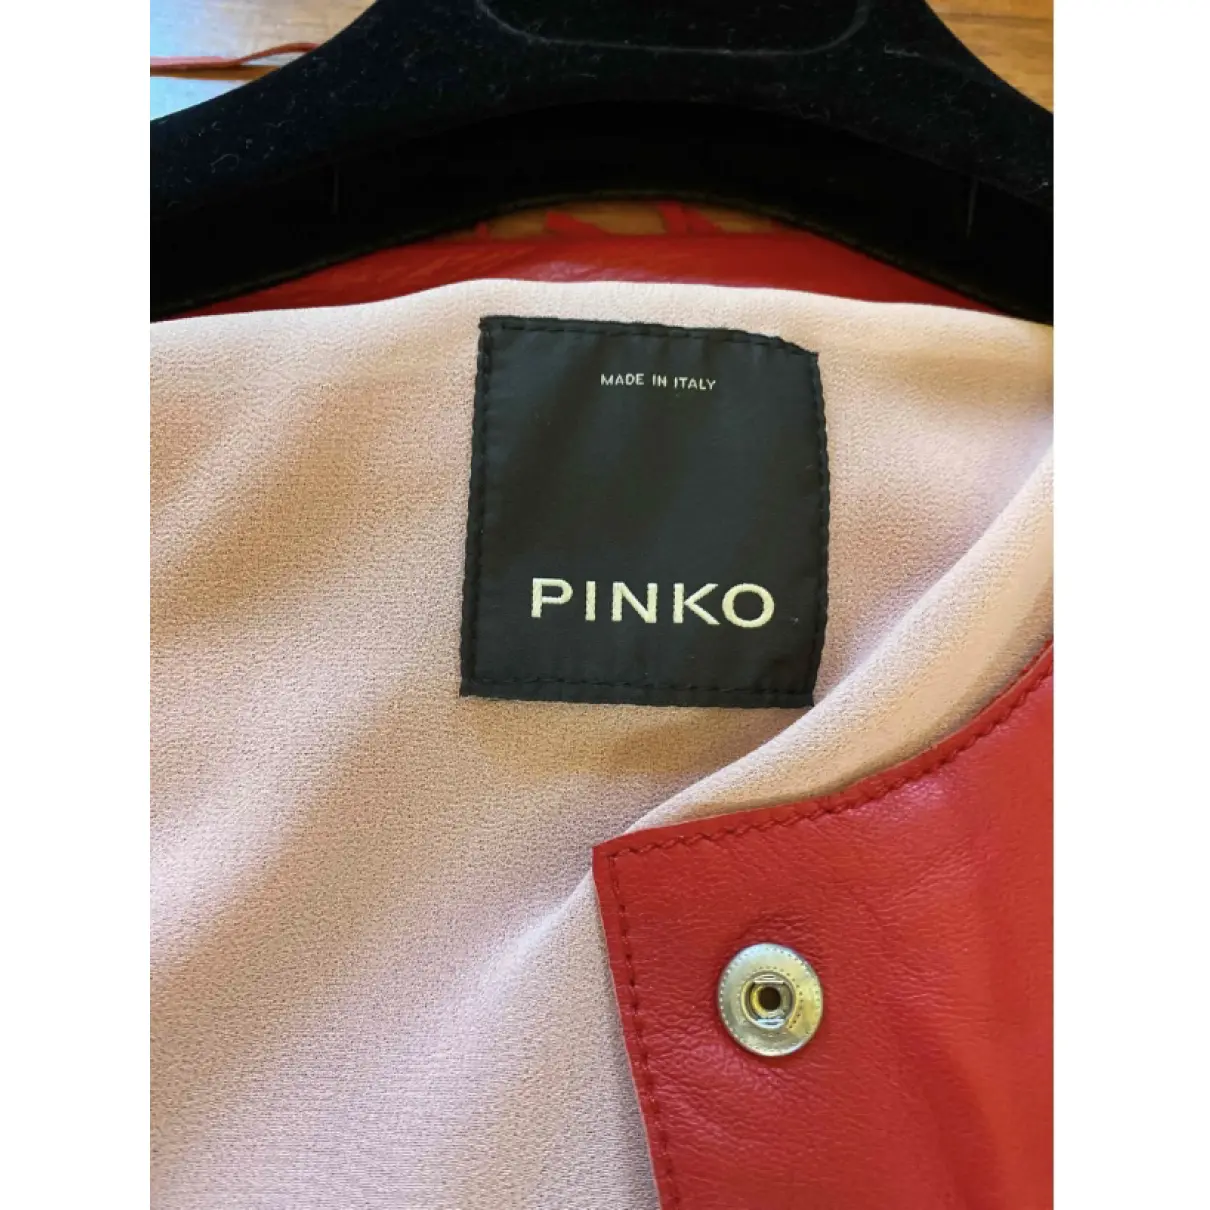 Buy Pinko Leather jacket online